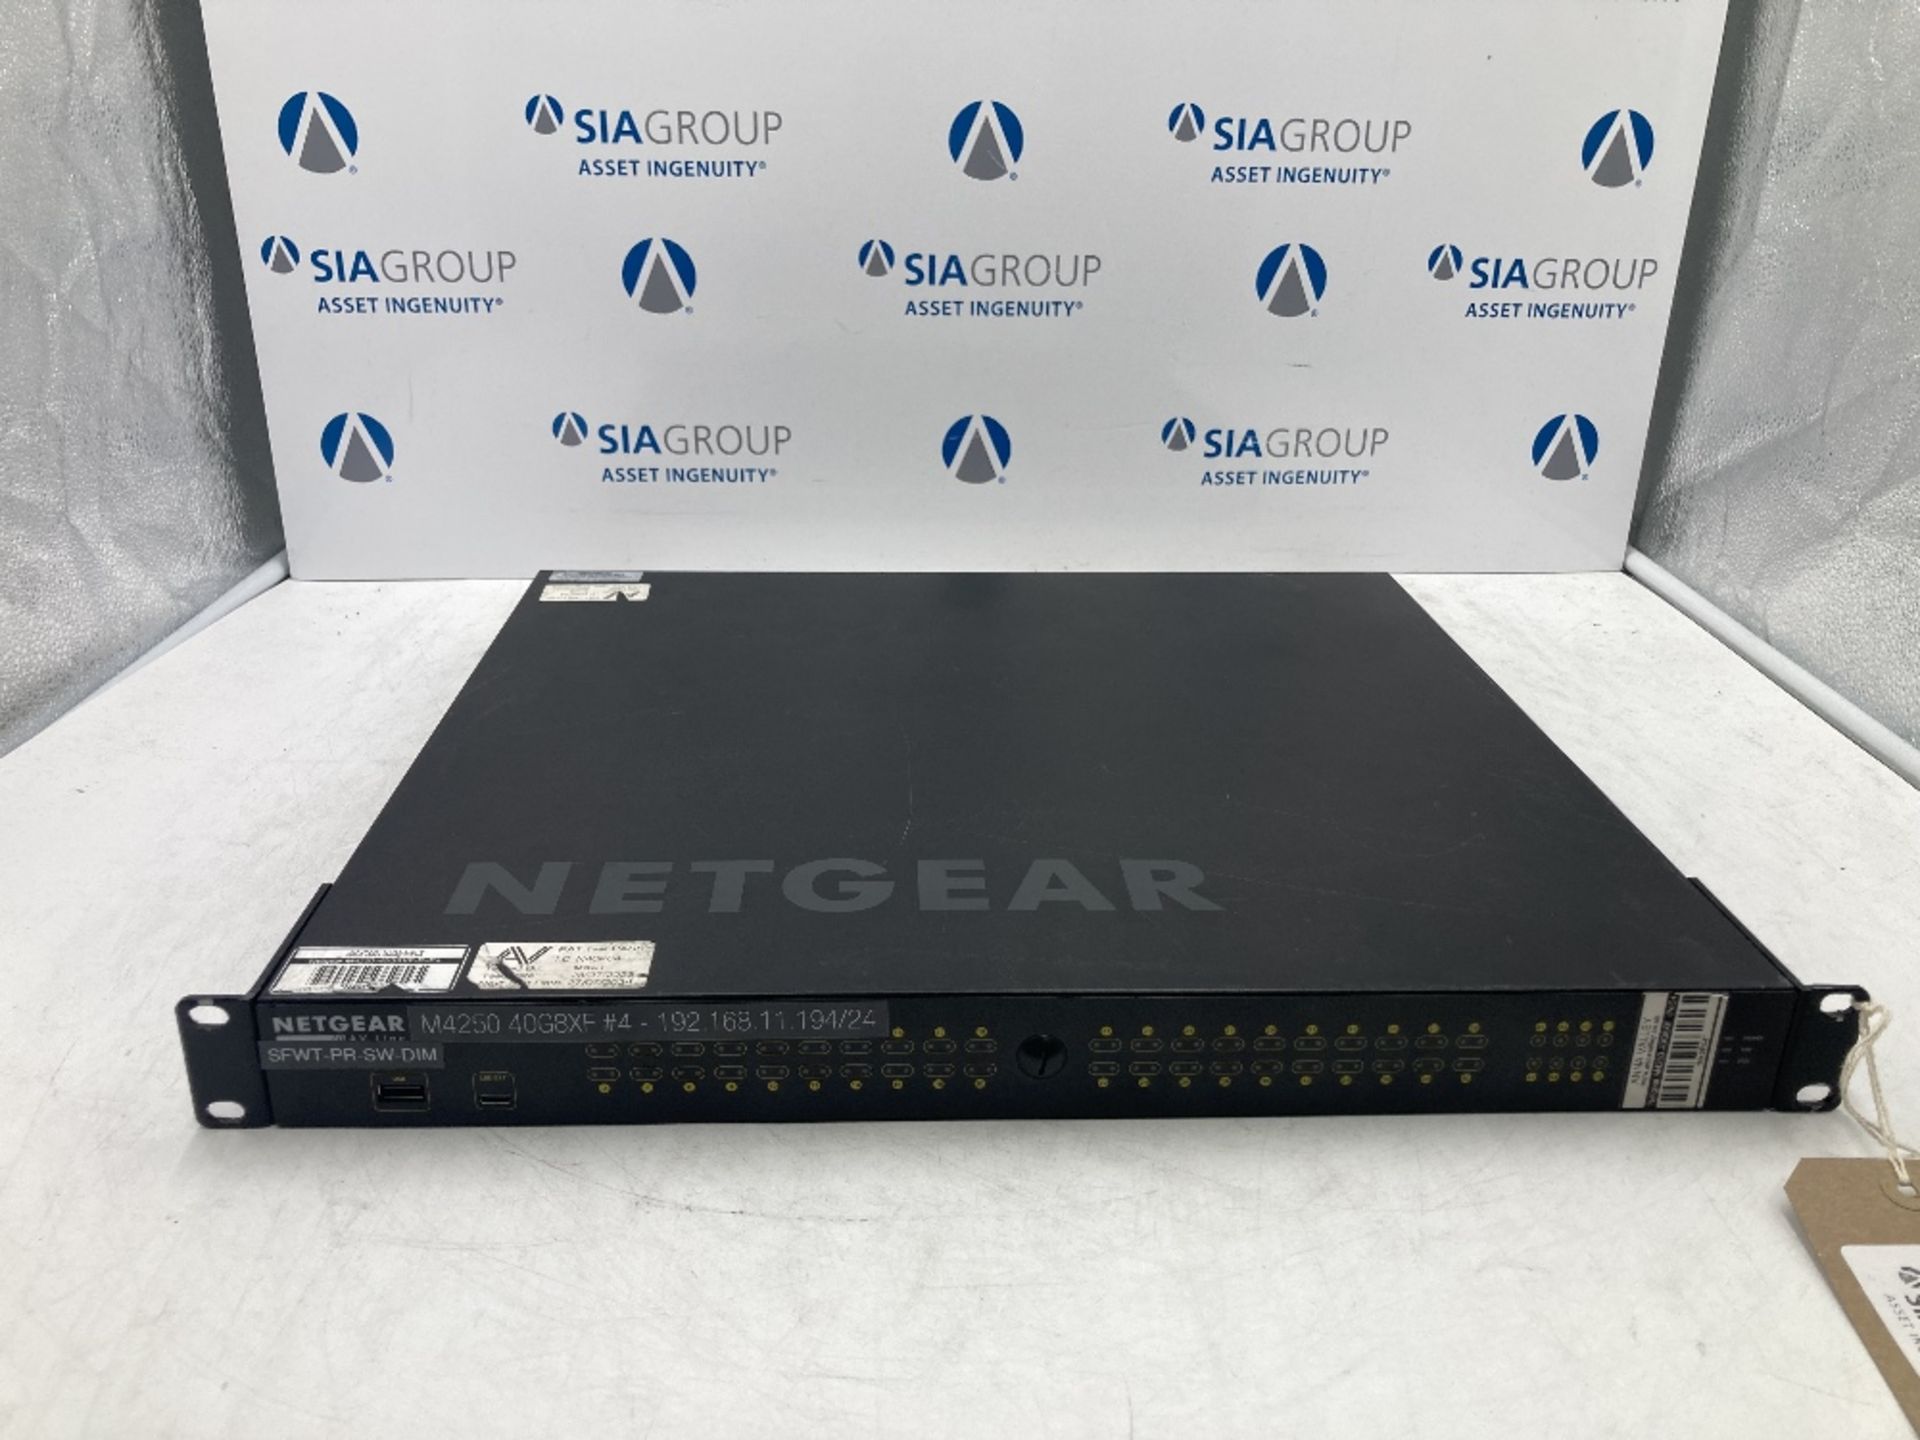 Netgear AV Line M4250-40G8XF - 40 Port Gigabit PoE+ Managed Network Switch